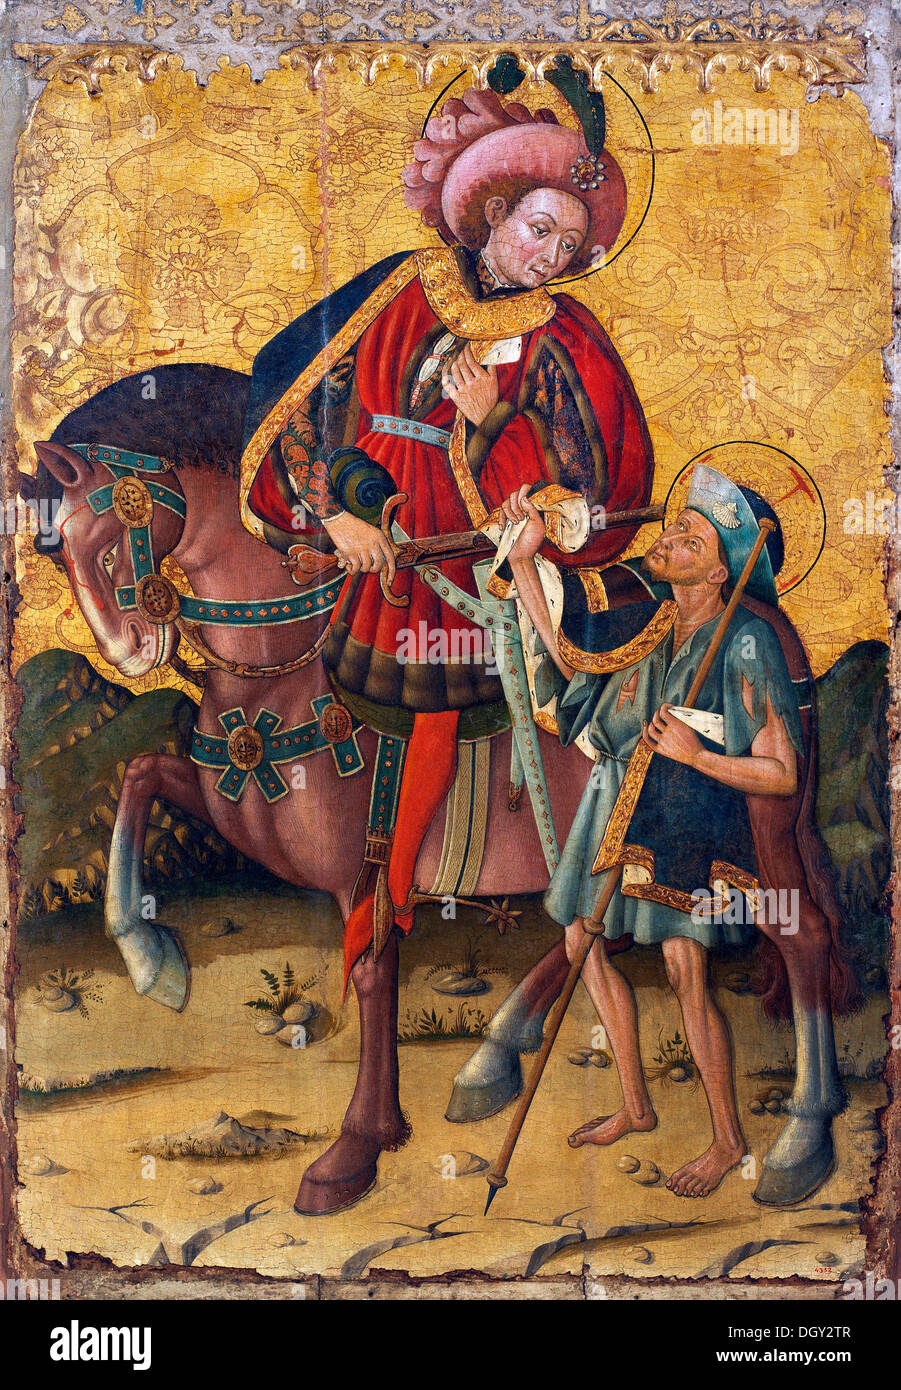 Blasco de Granen, Saint Martin la condivisione del suo mantello. A metà del XV secolo. Tempera e foglia oro su legno. Foto Stock